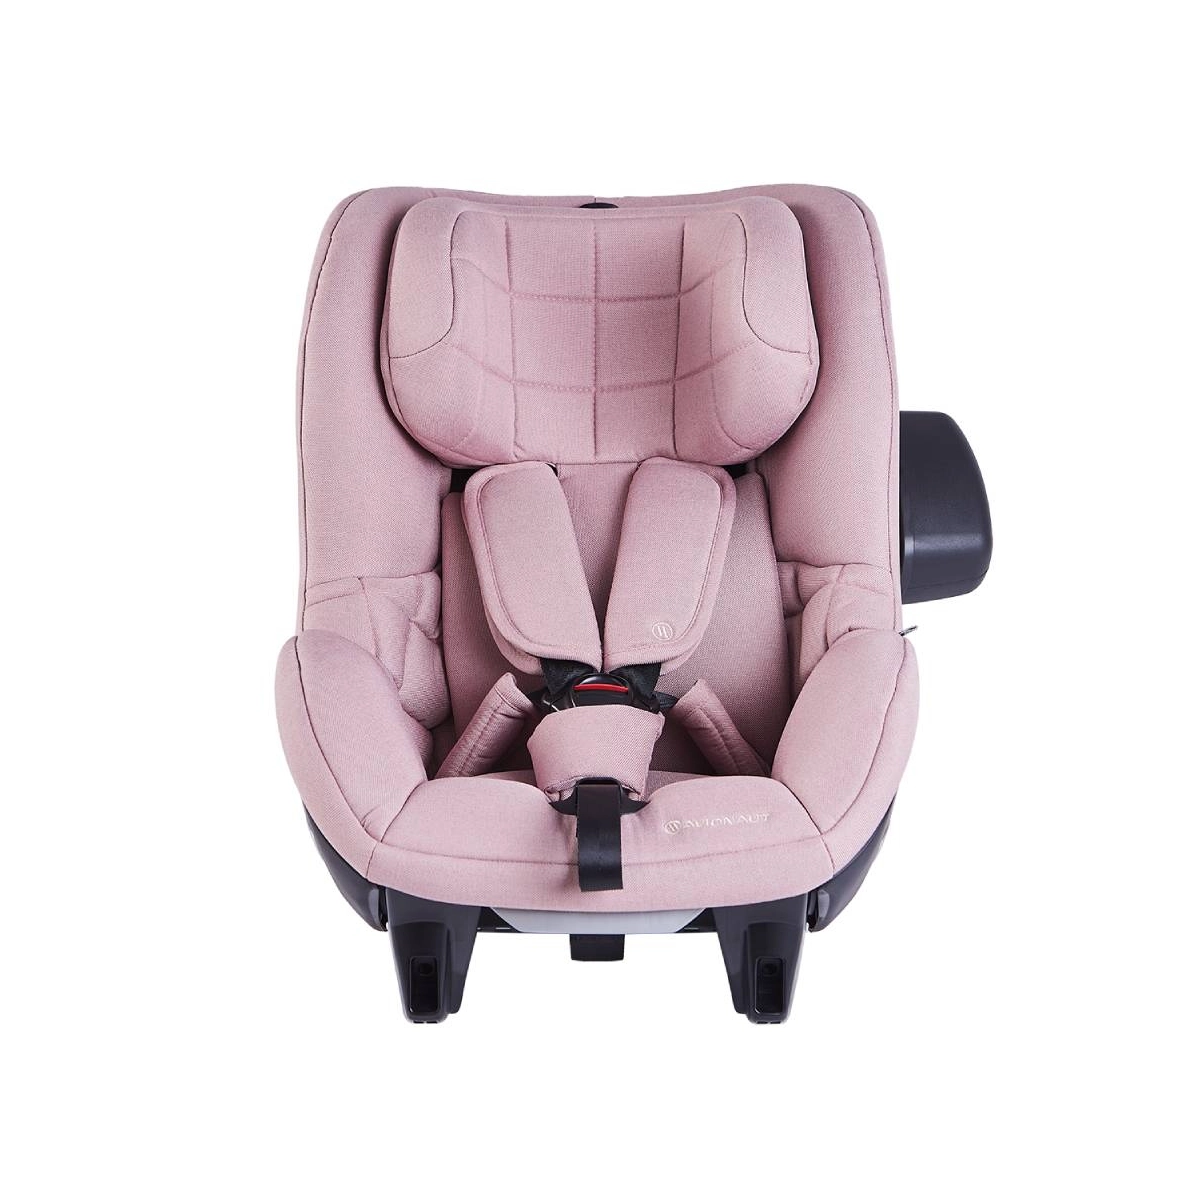 Avionaut Aerofix 2.0 Car Seat – Pink